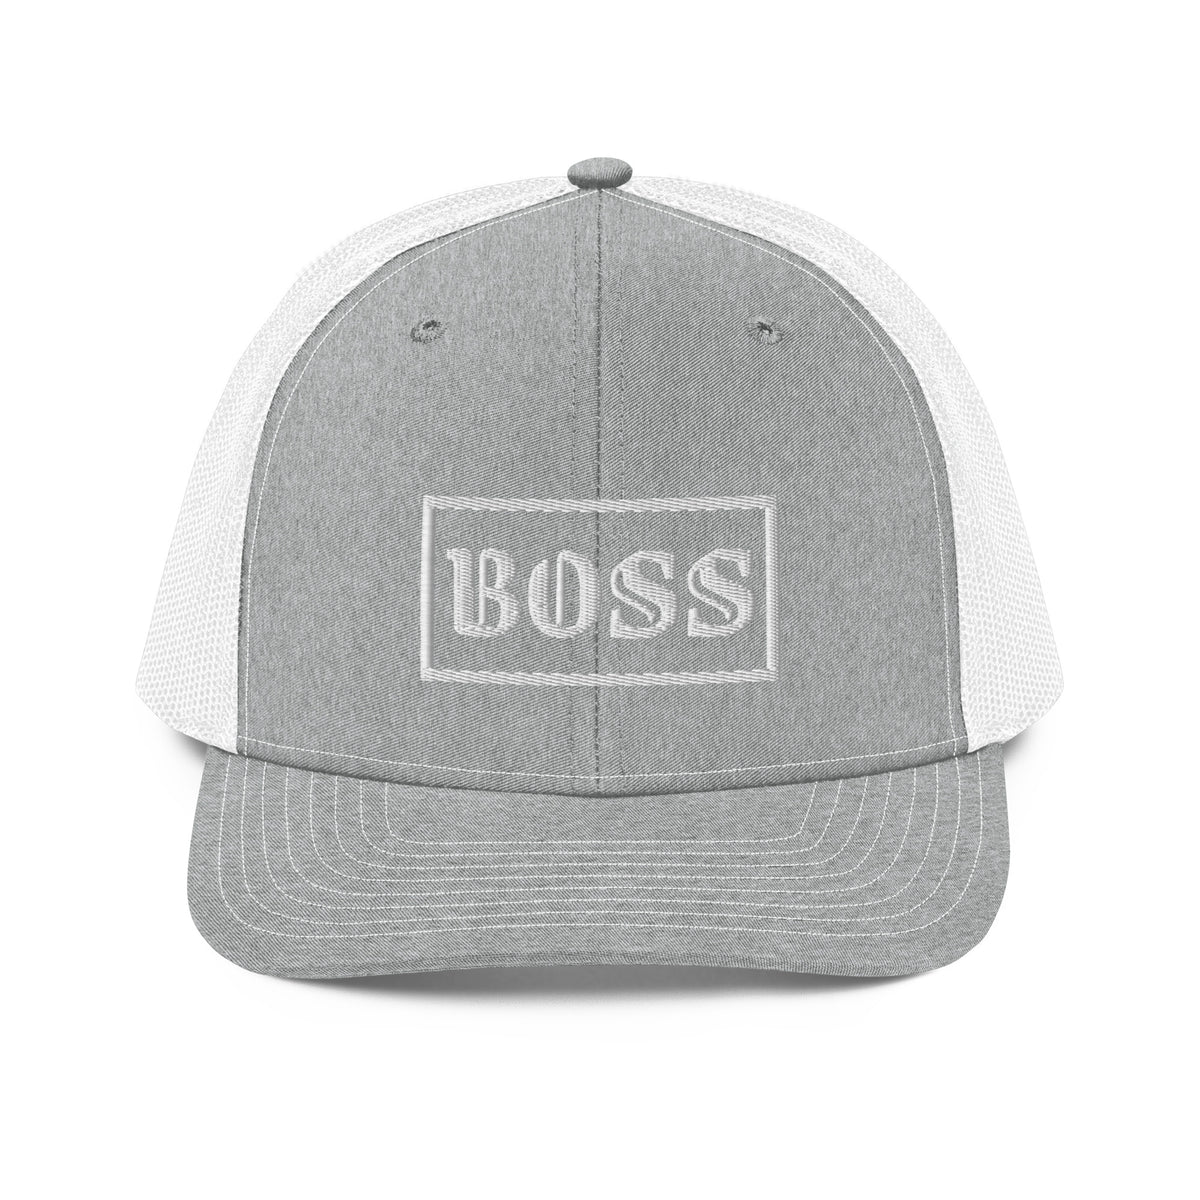 Boss Trucker Cap